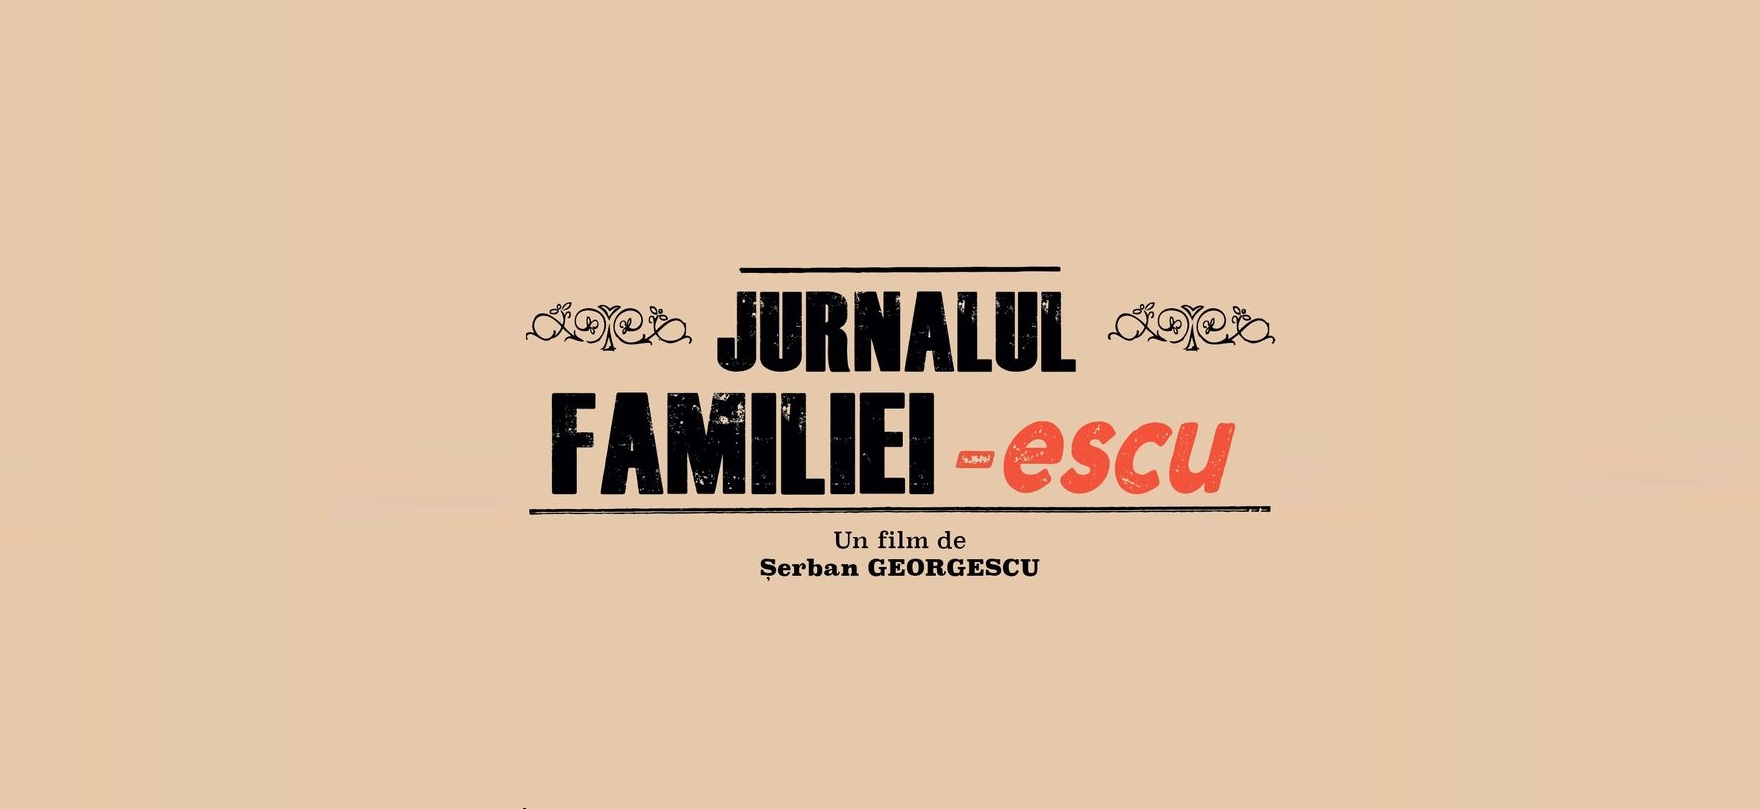 Pe 25 octombrie 2019, va avea loc premiera filmului documentar „Jurnalul familiei -escu”